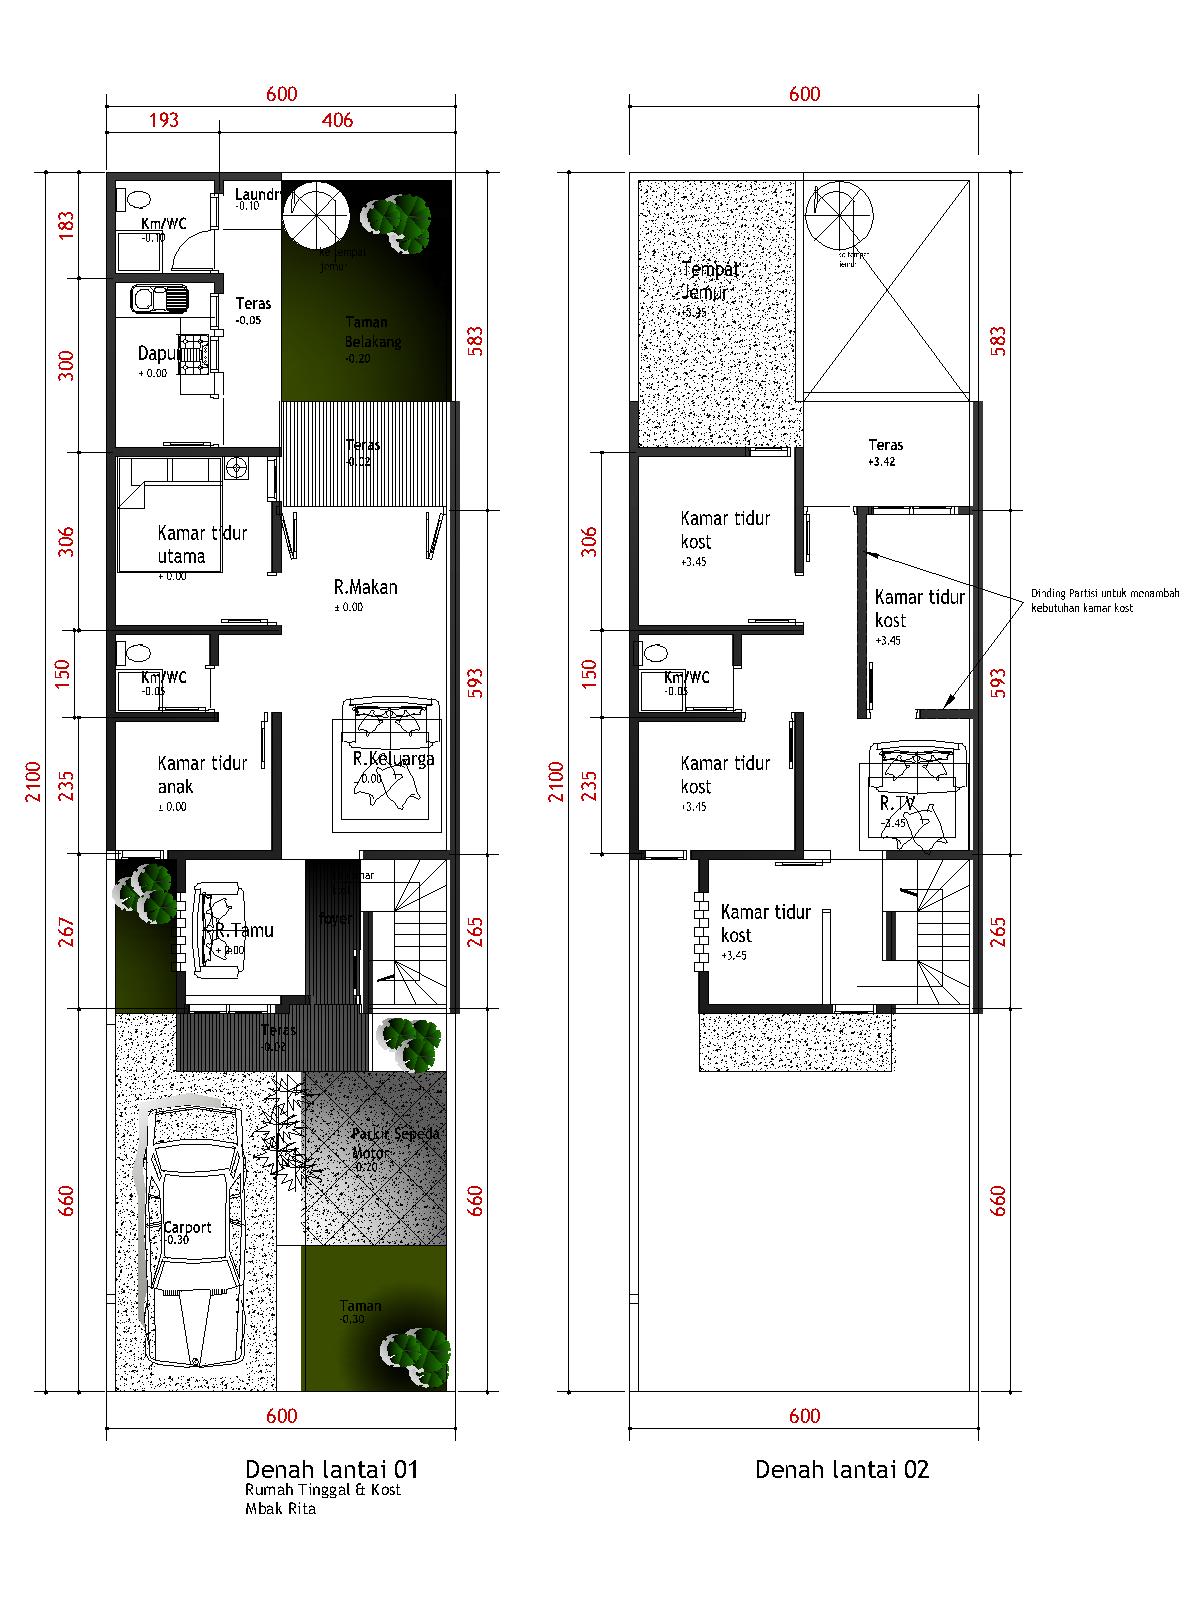 67 Desain Rumah Minimalis Ukuran 4x12 Desain Rumah Minimalis Terbaru